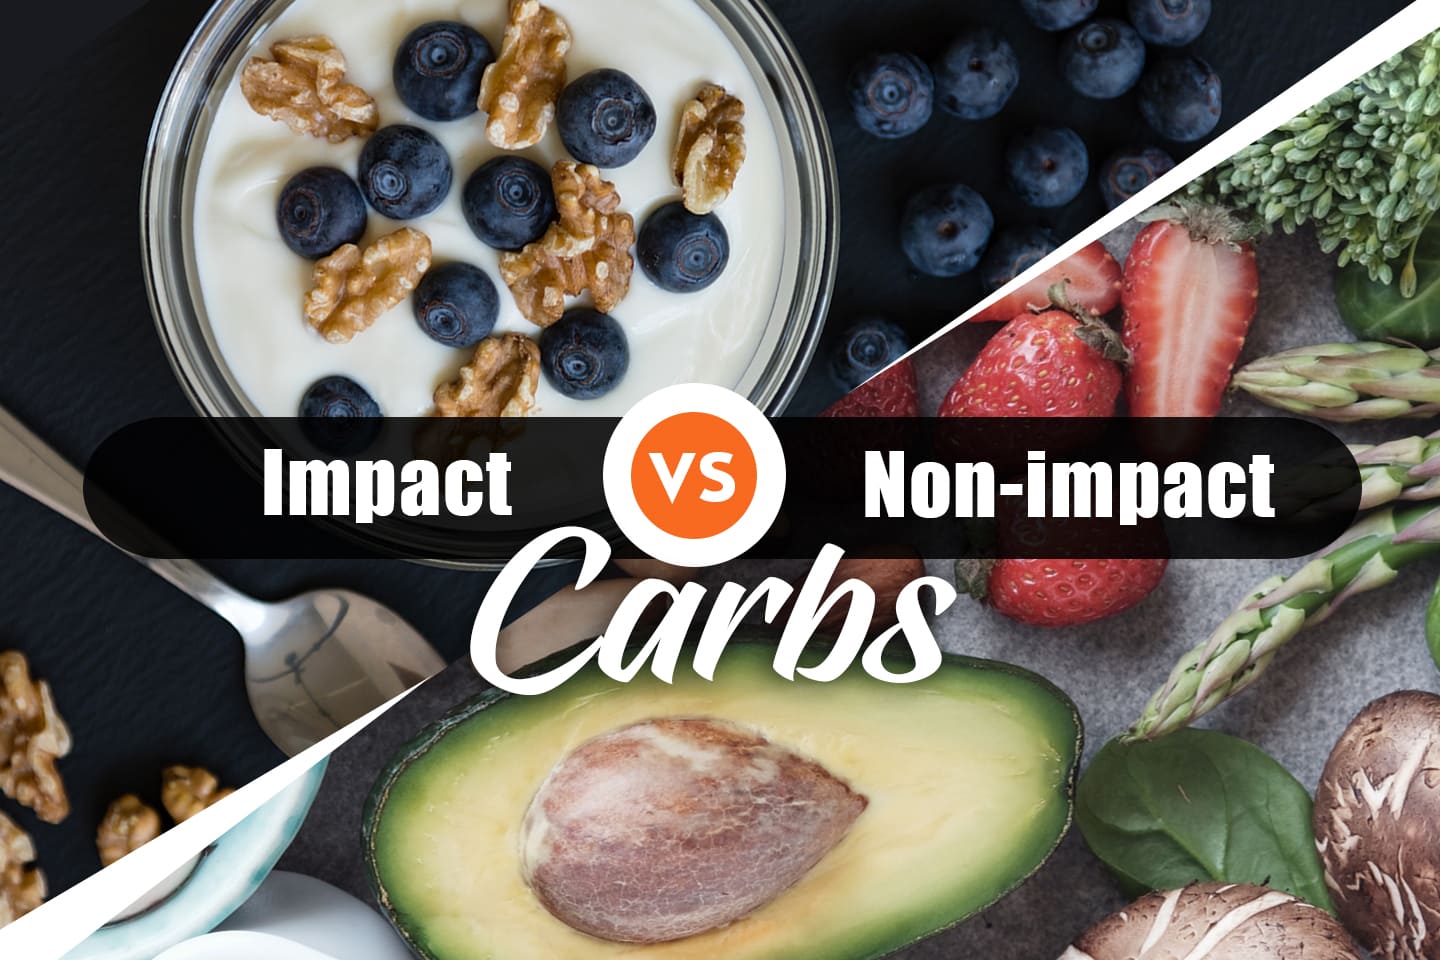 Impact vs Non impact carbs